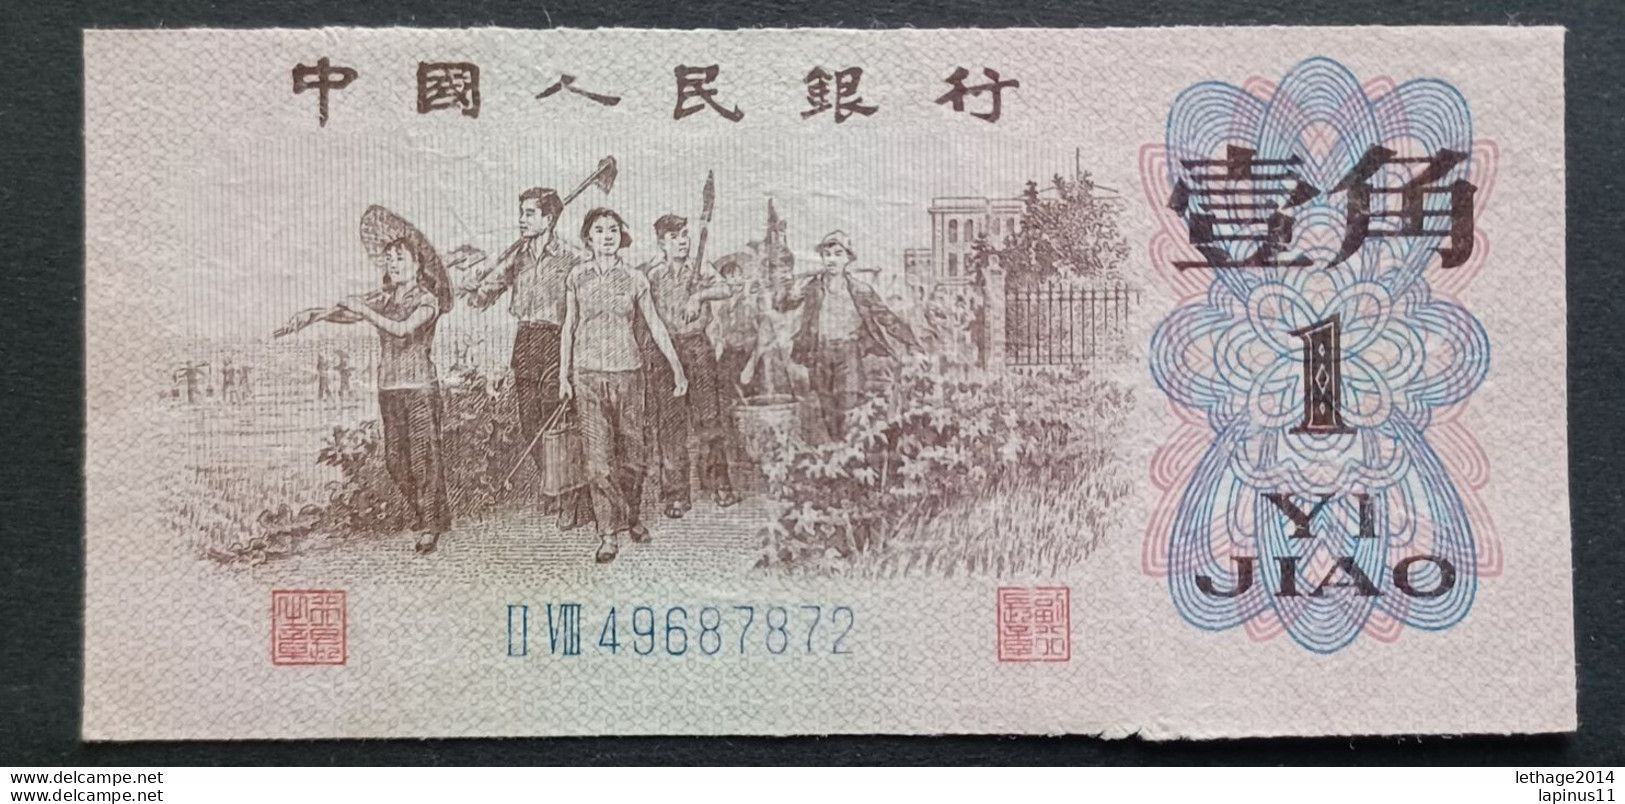 BANKNOTE CINA ZHONGGUO RENMI YINHANG 1 YI JIAO 1962 UNCIRCULATED - Cina